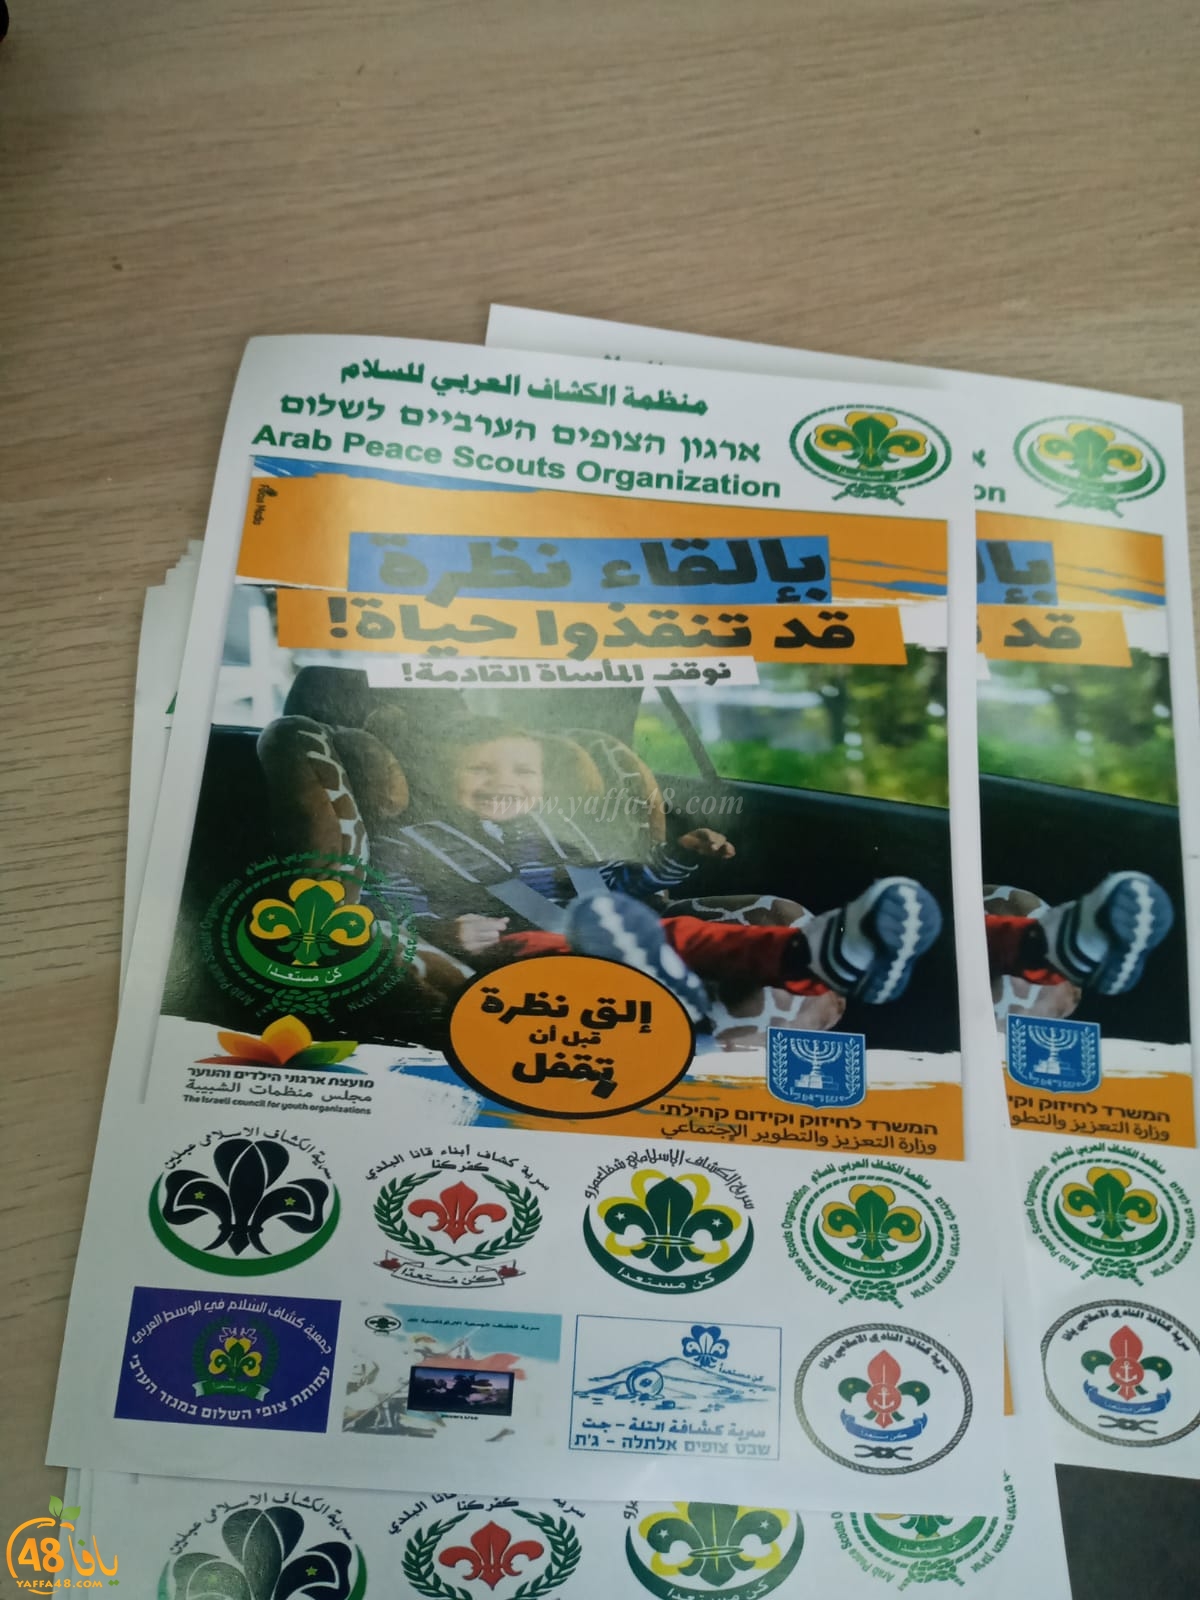  كشاف النادي الاسلامي يشارك في حملة قطرية لمنع نسيان الأطفال في المركبات